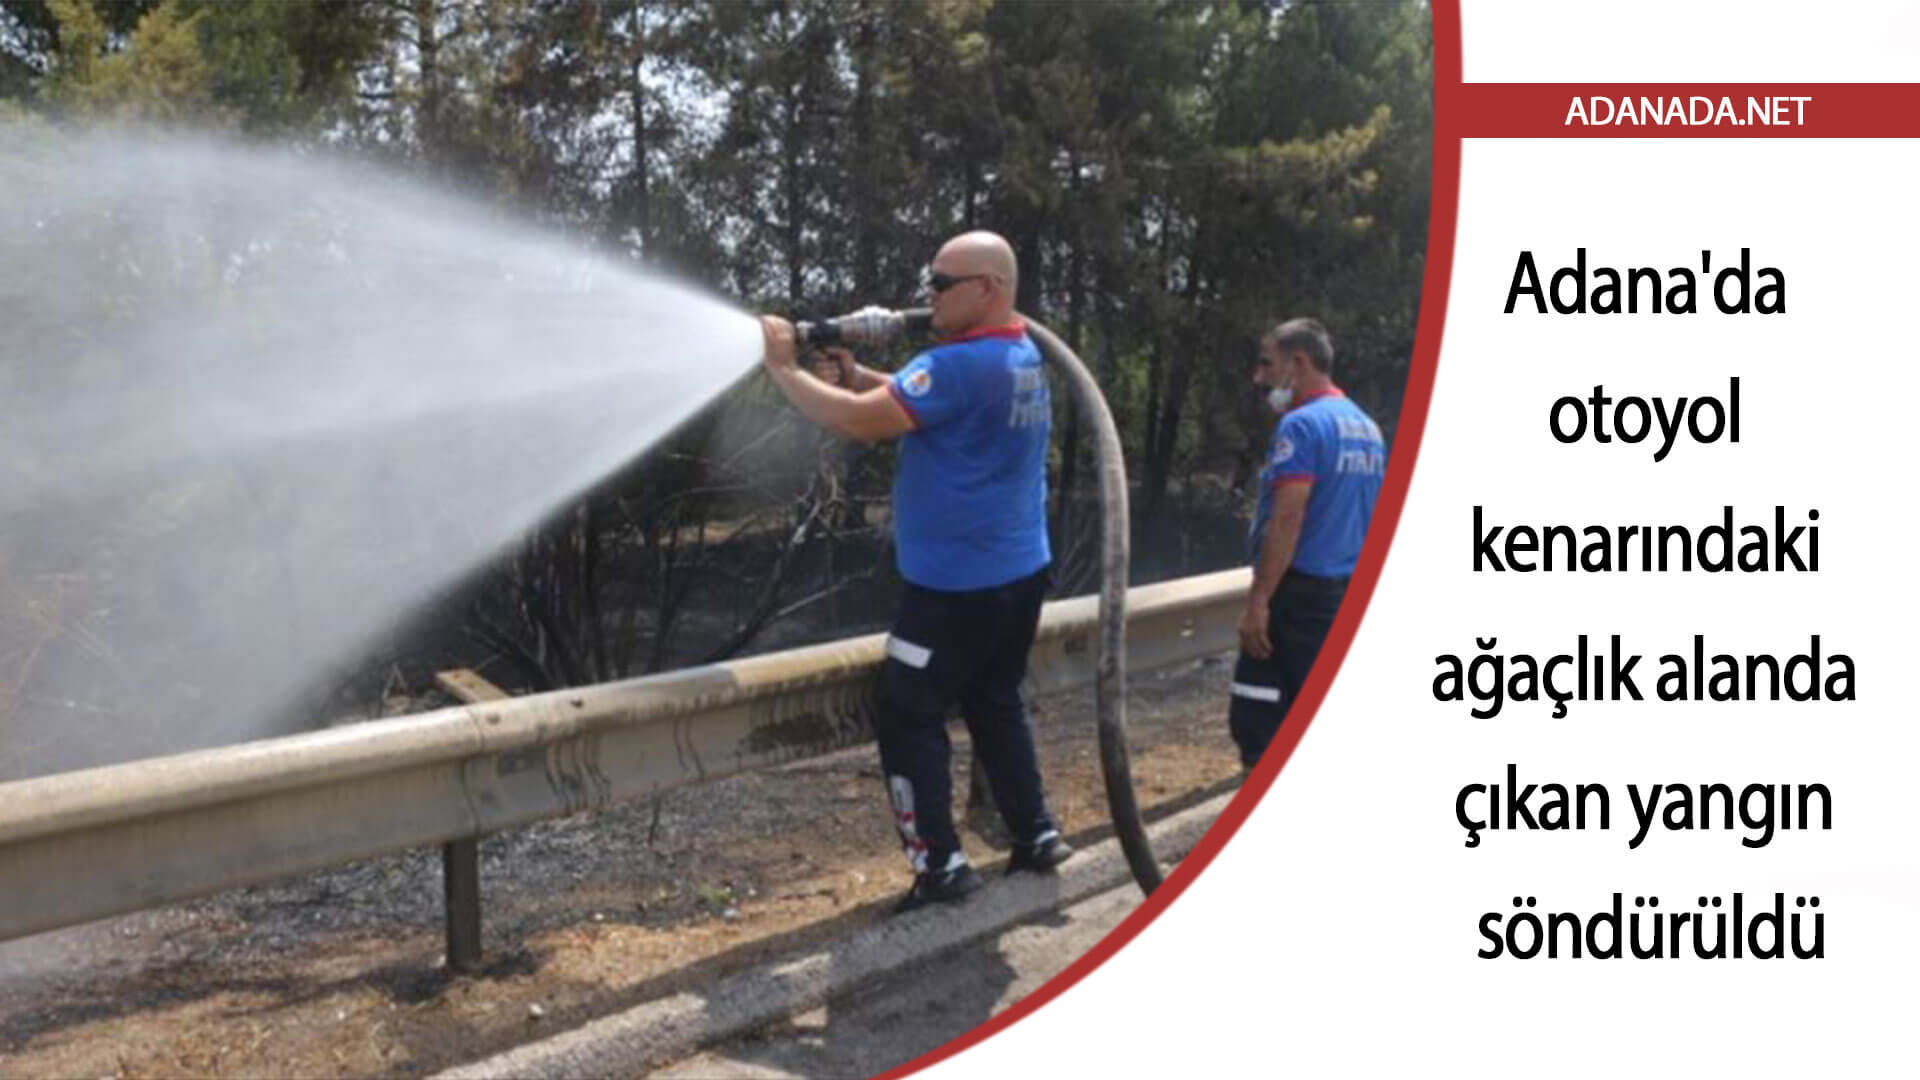 Adana’da otoyol kenarındaki ağaçlık alanda çıkan yangın söndürüldü